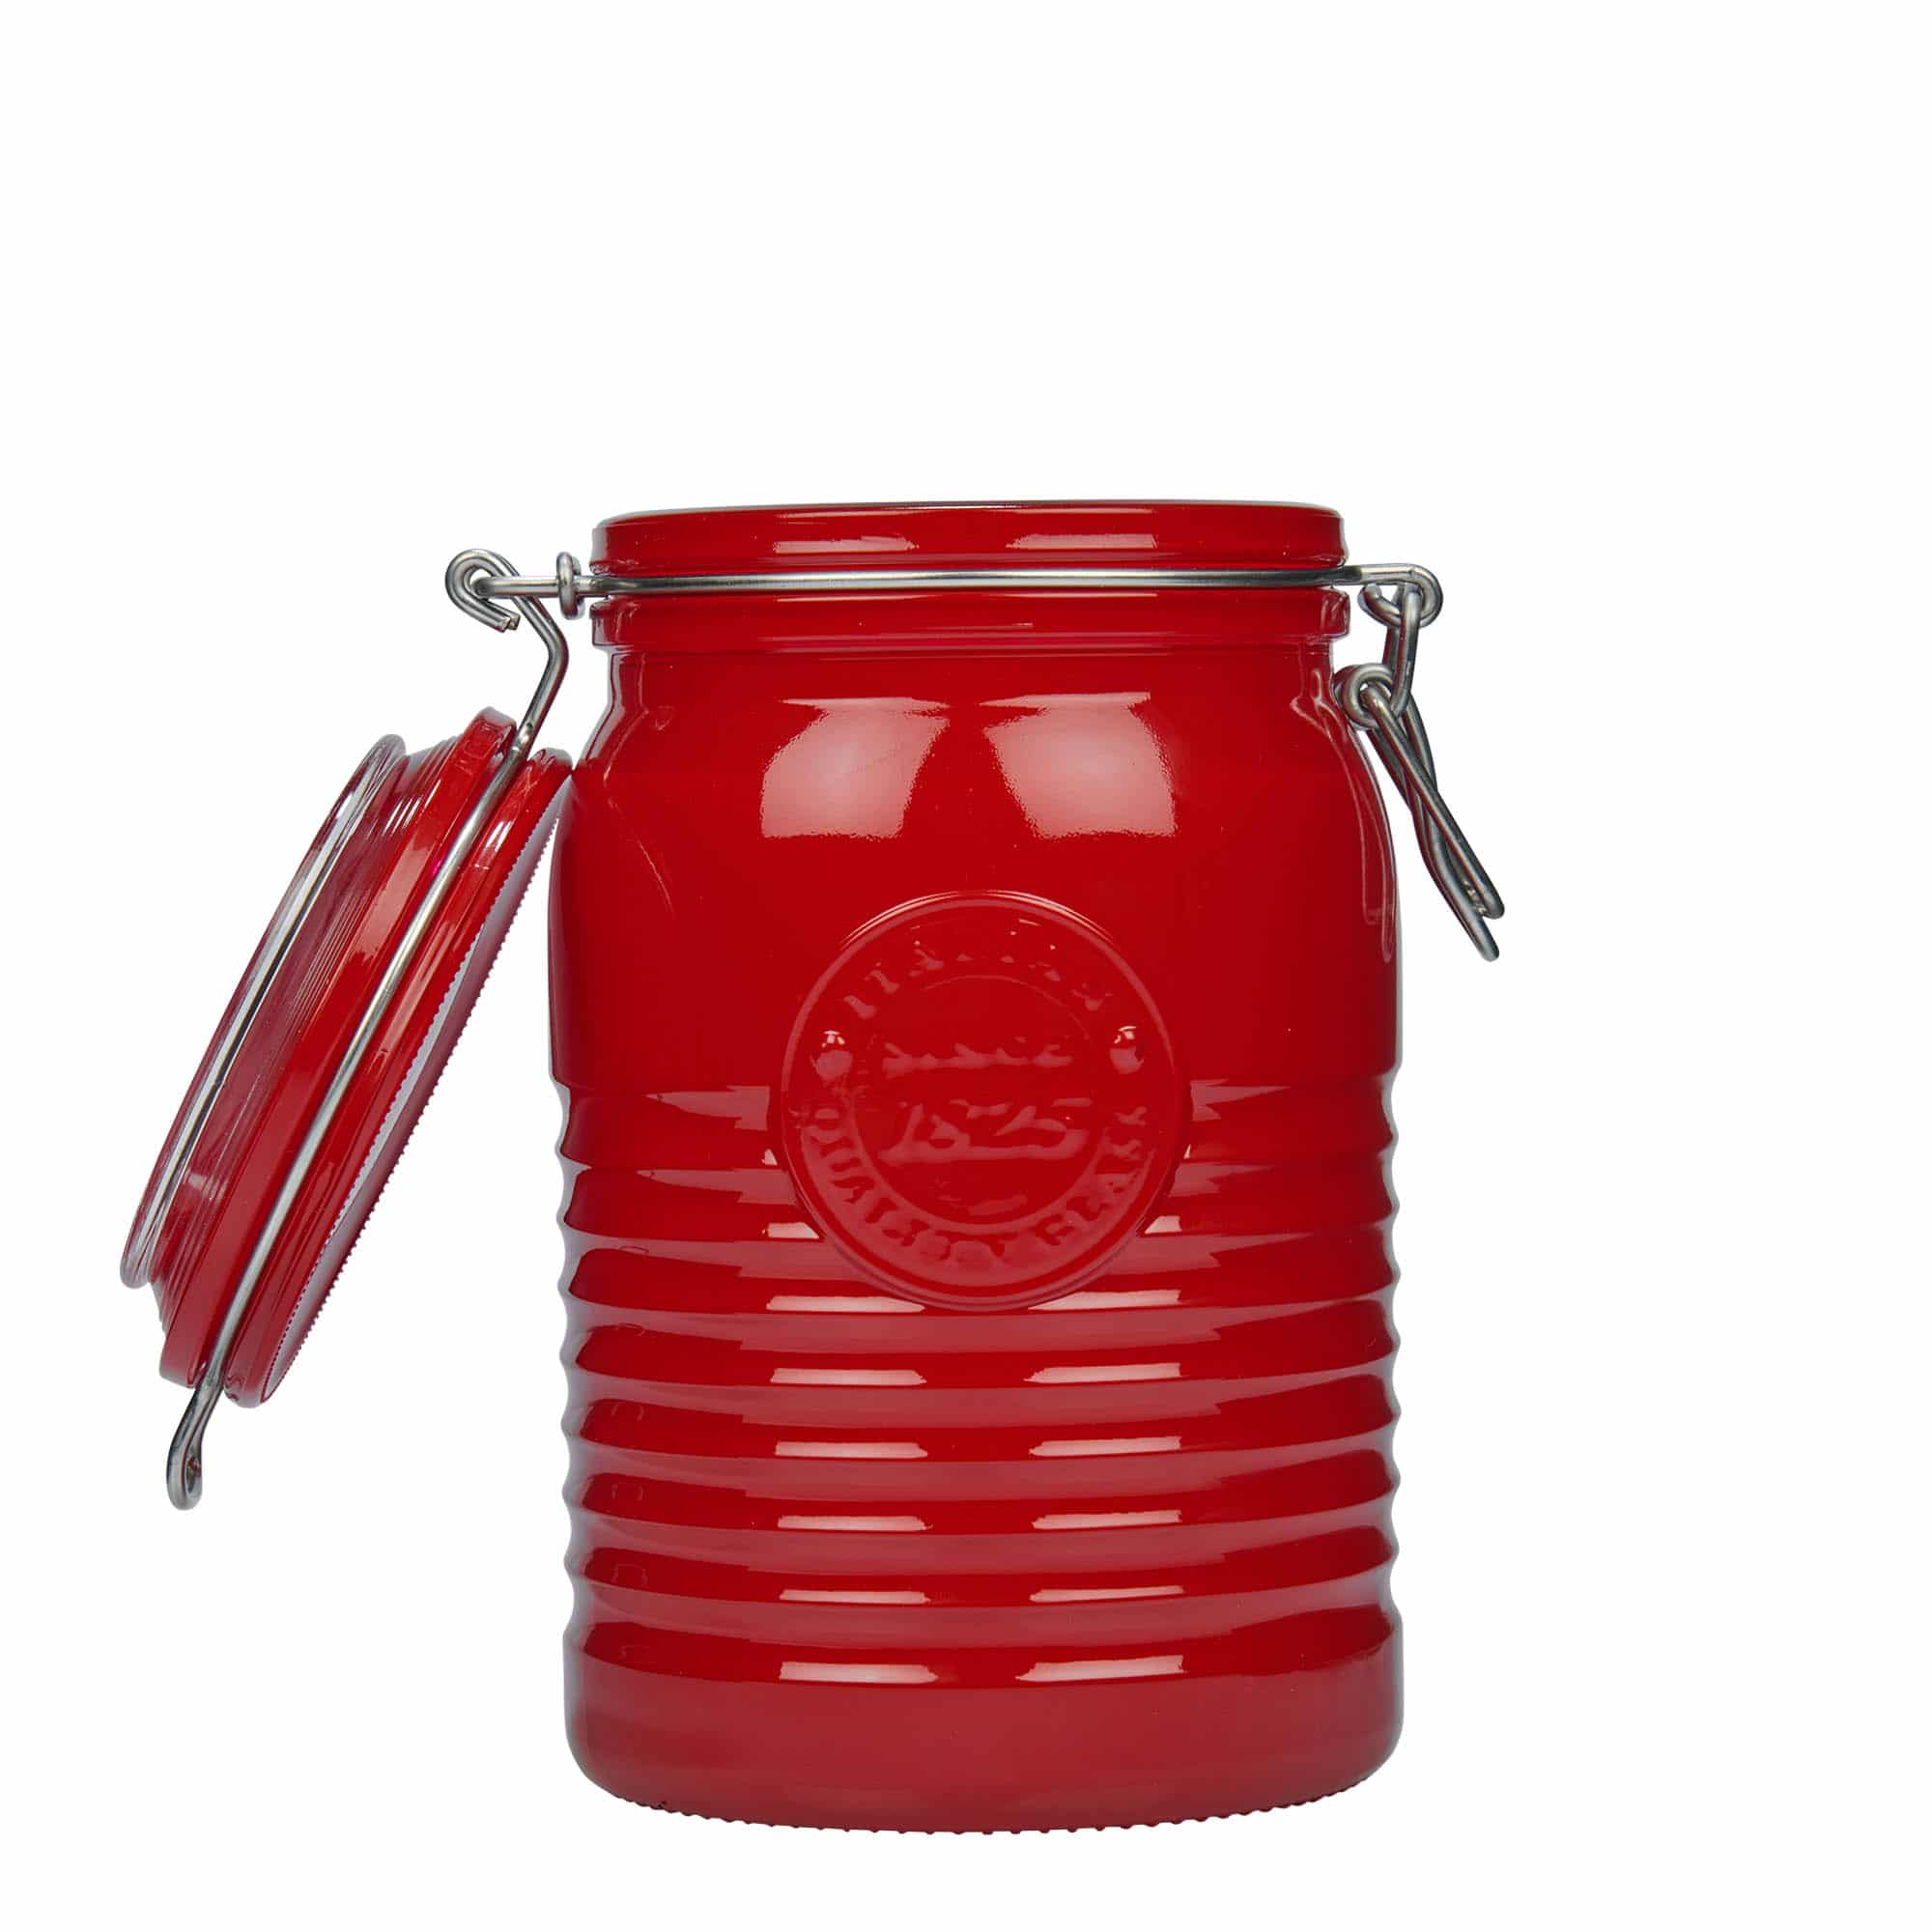 1,000 ml clip top jar 'Officina 1825', red, closure: clip top